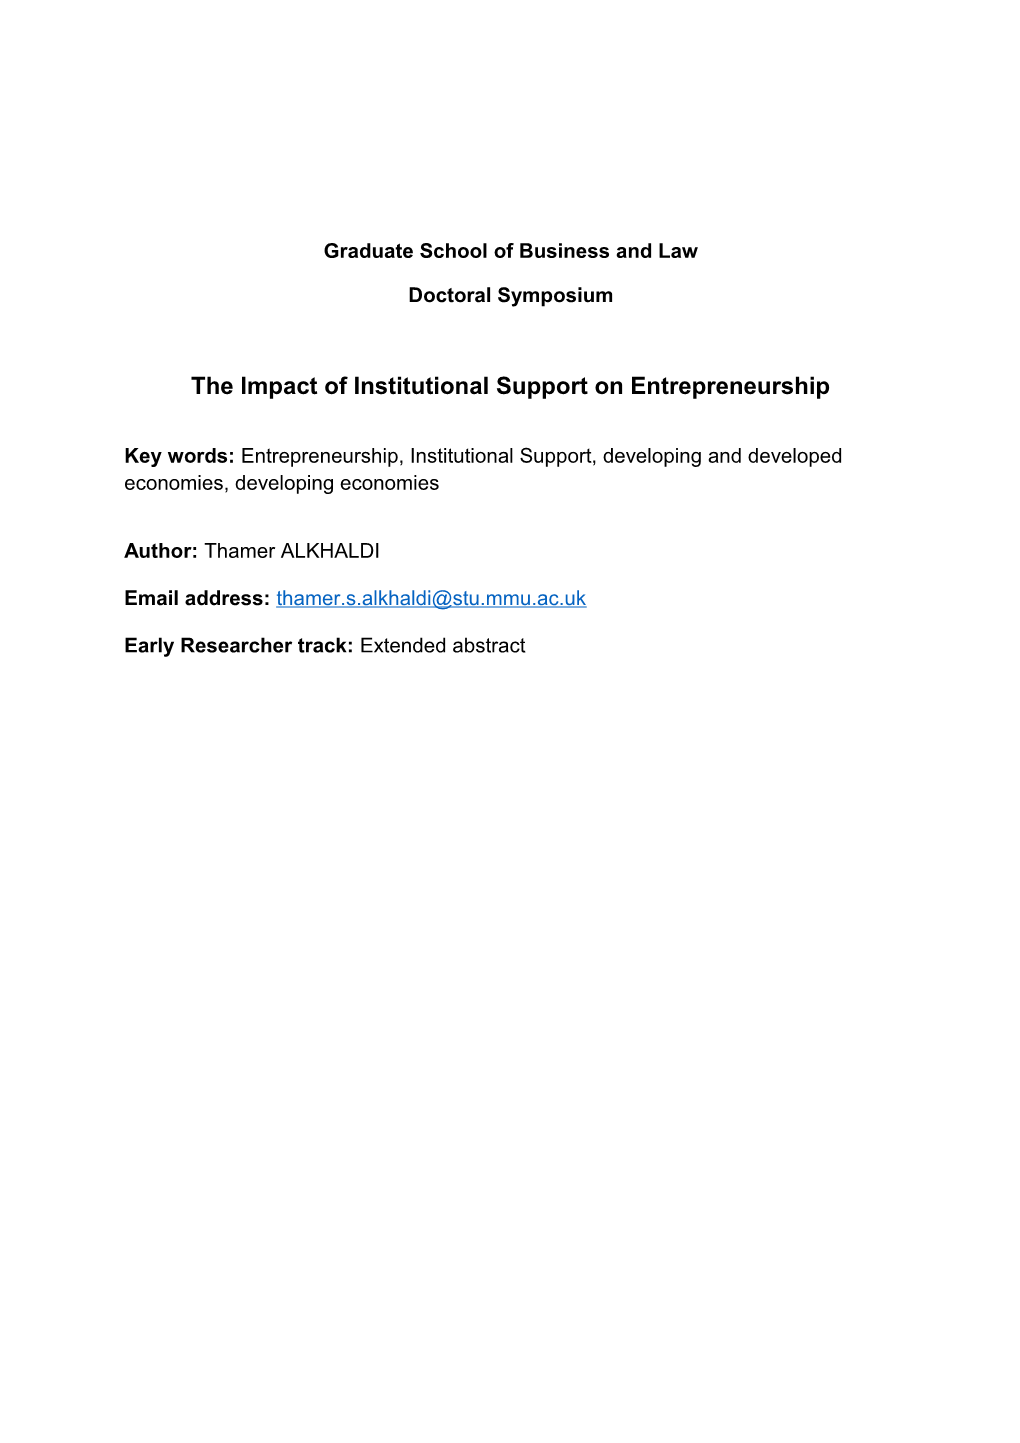 Entrepreneurial Culture And Graduate Entrepreneurs